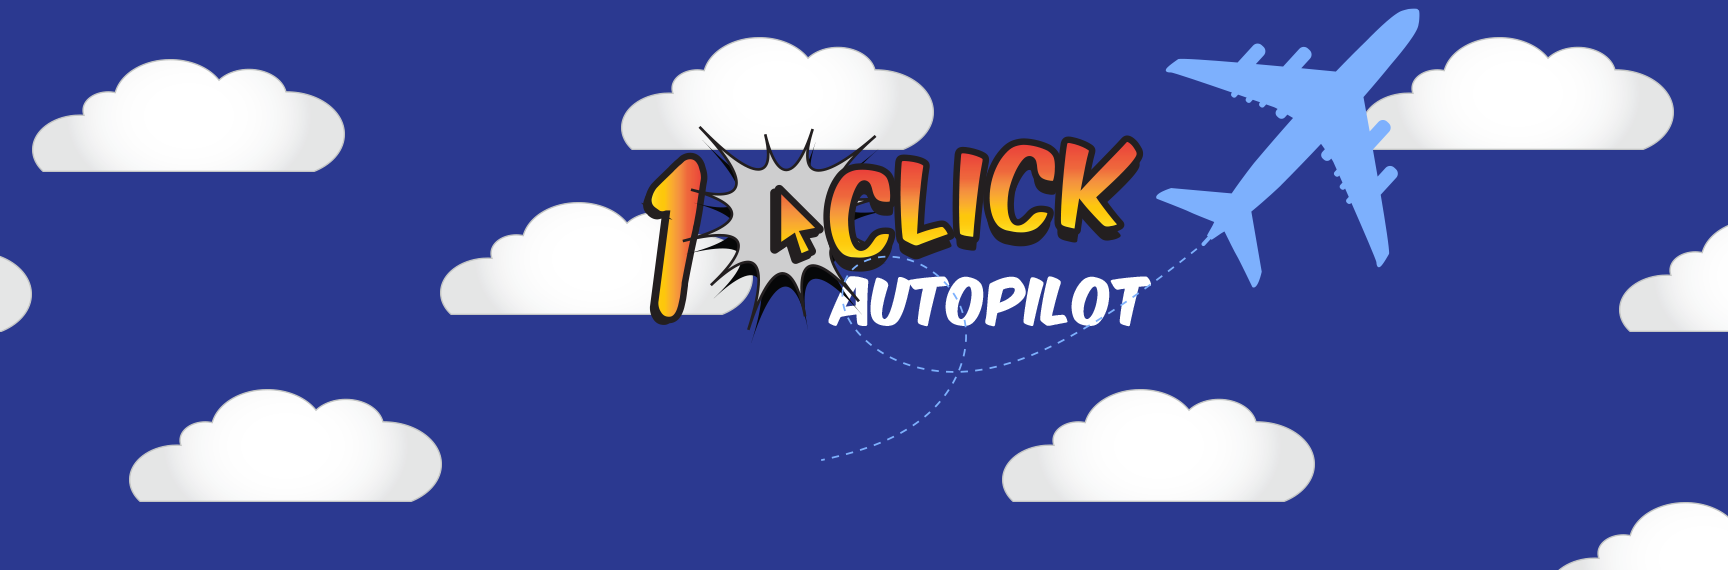 Lender*VP 1Click Autopilot